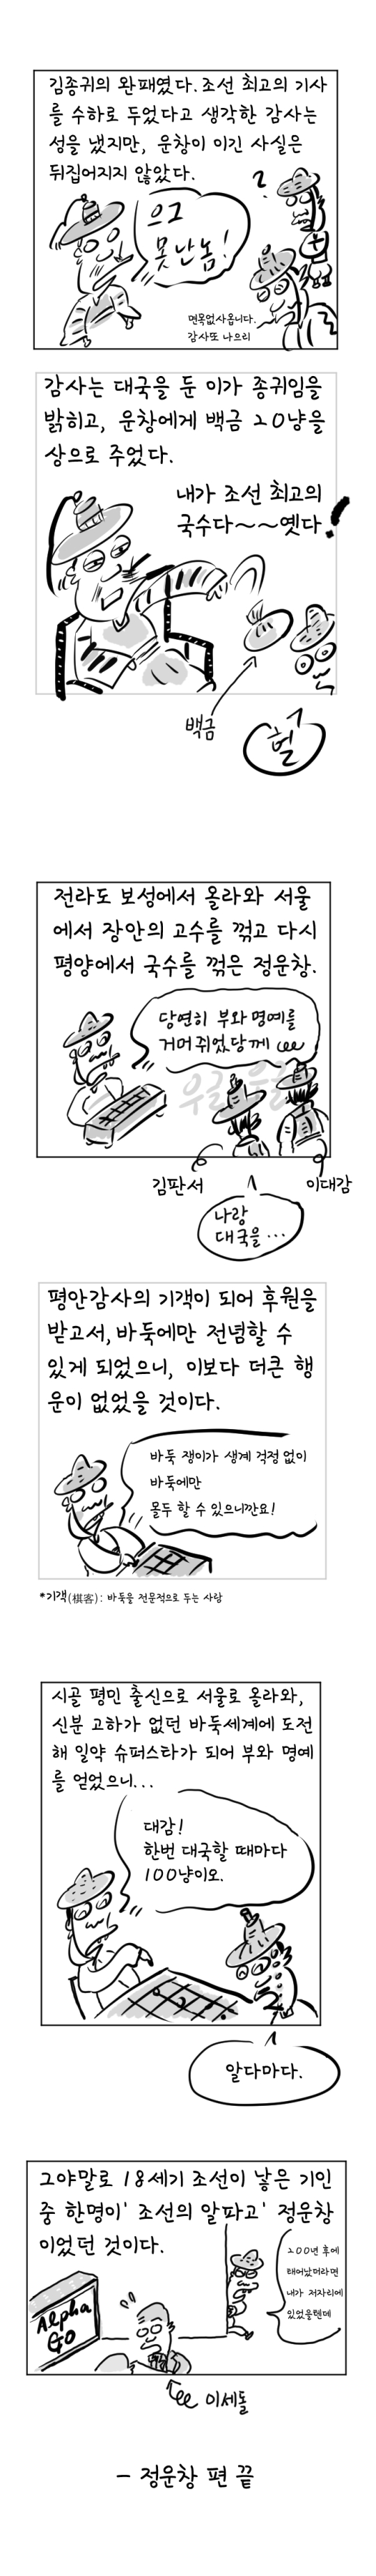 [역사툰] 史(사)람 이야기 5화: 조선 알파고, 정운창

